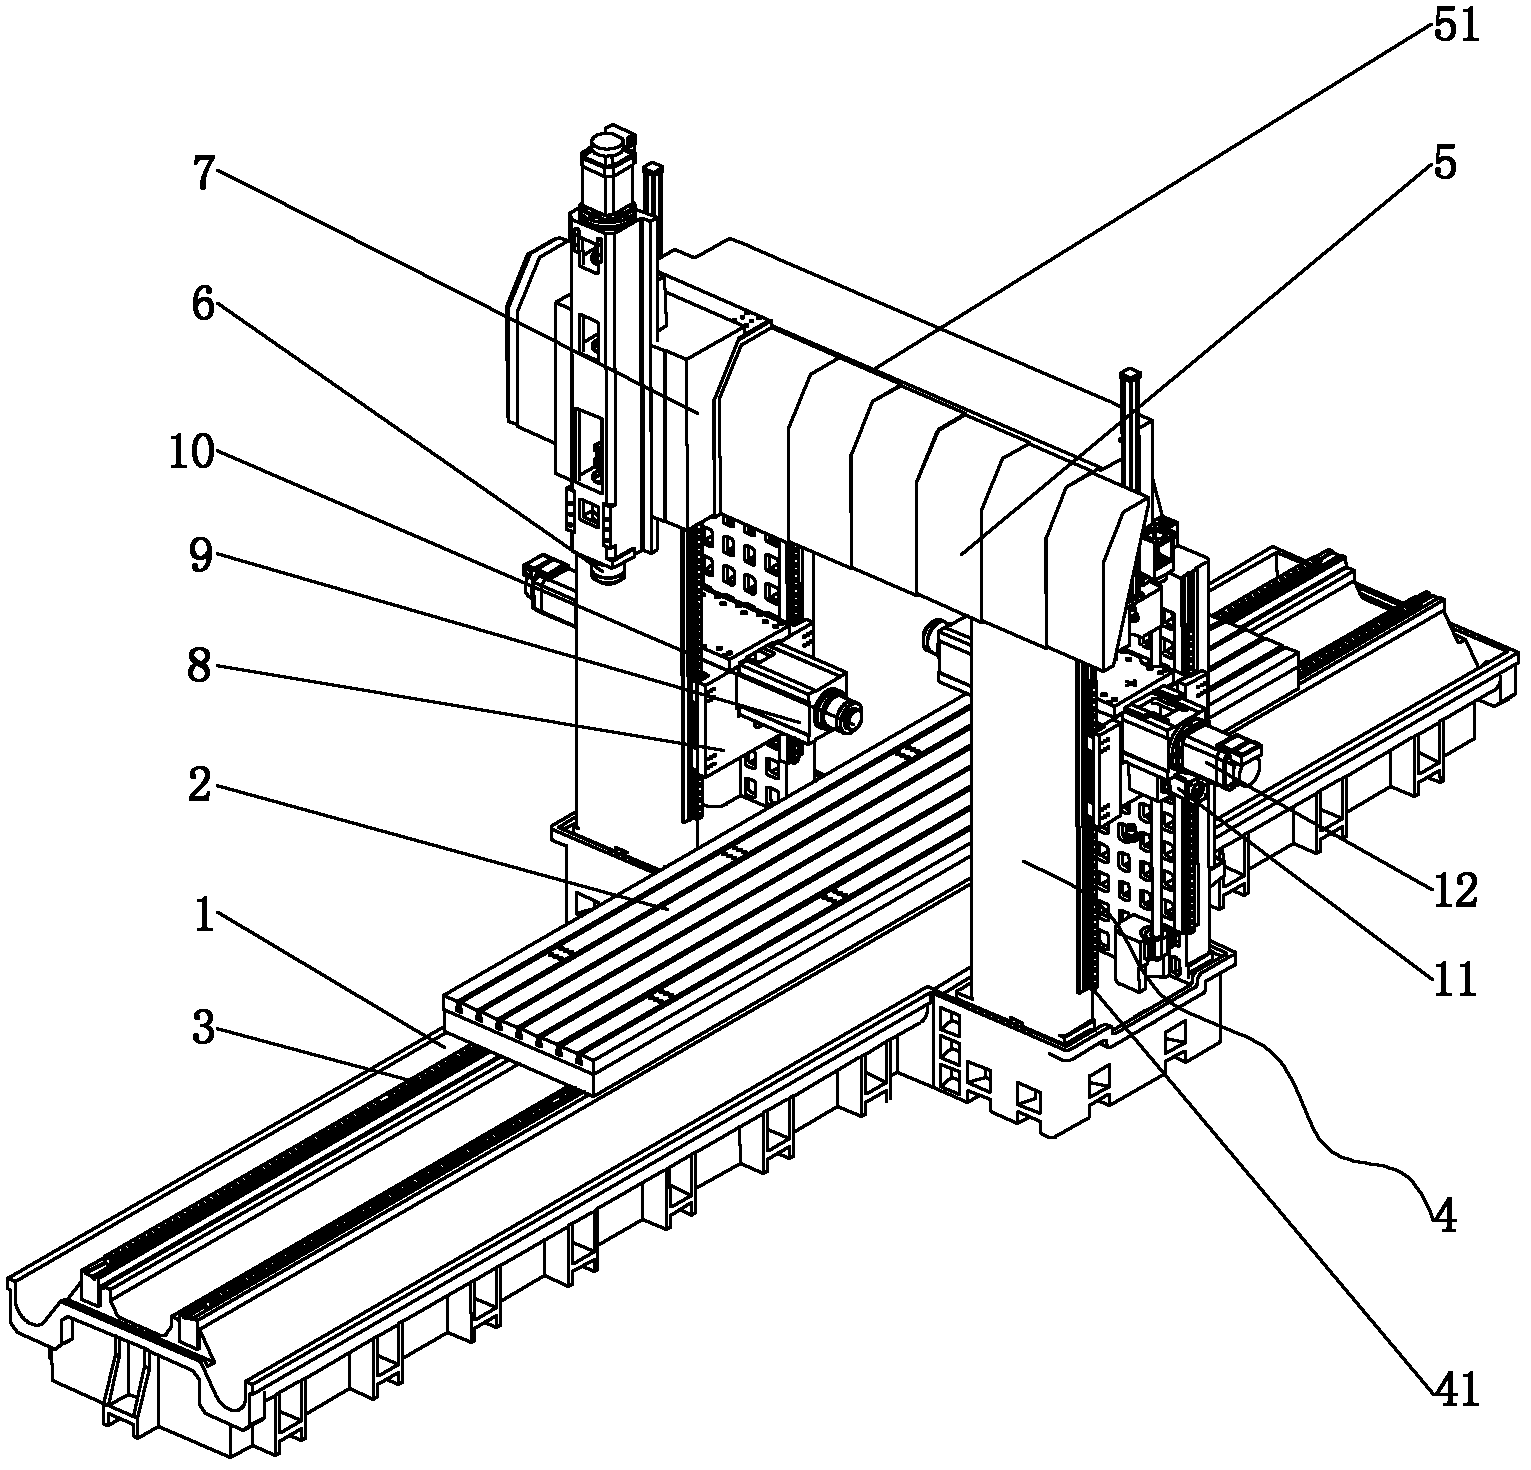 Duplex gantry milling machine